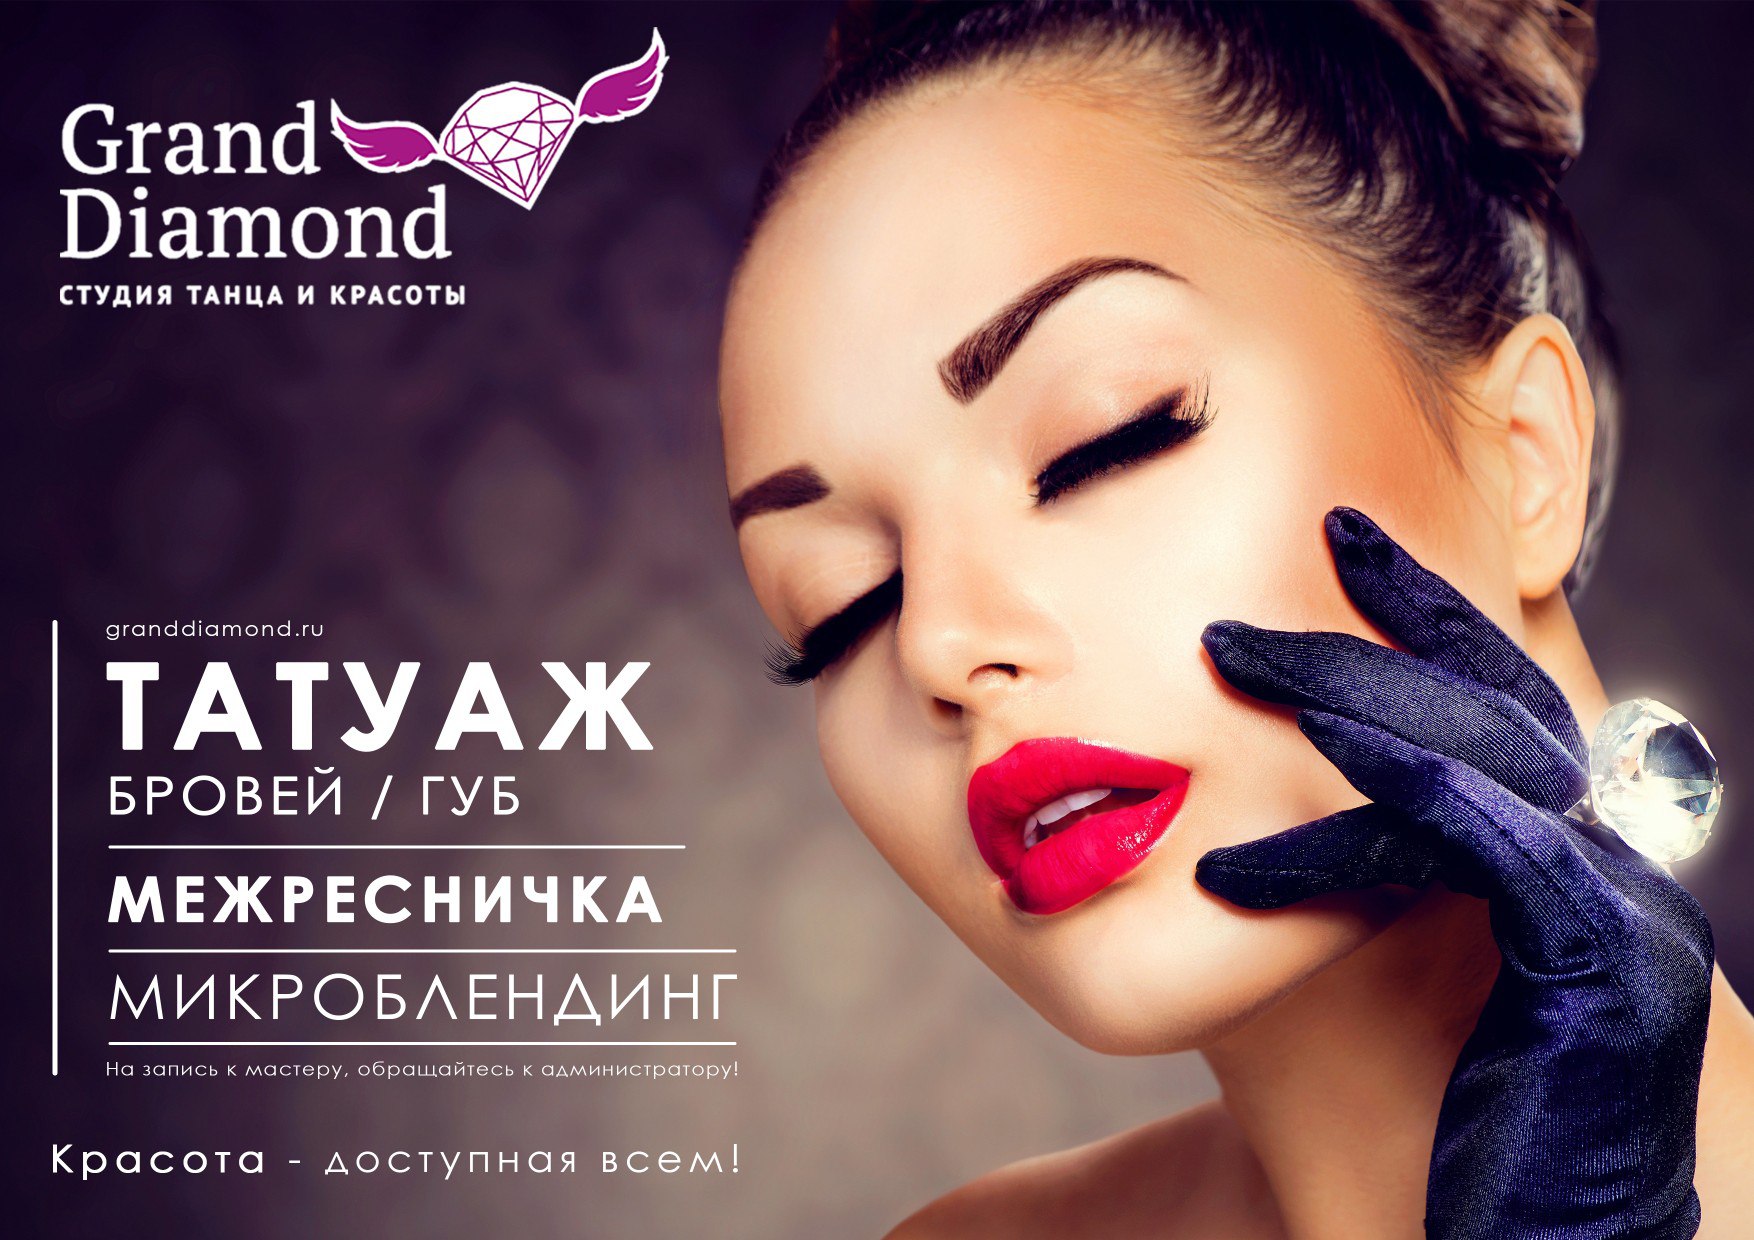 Татуаж губ во Владивостоке - салон Grand Diamond